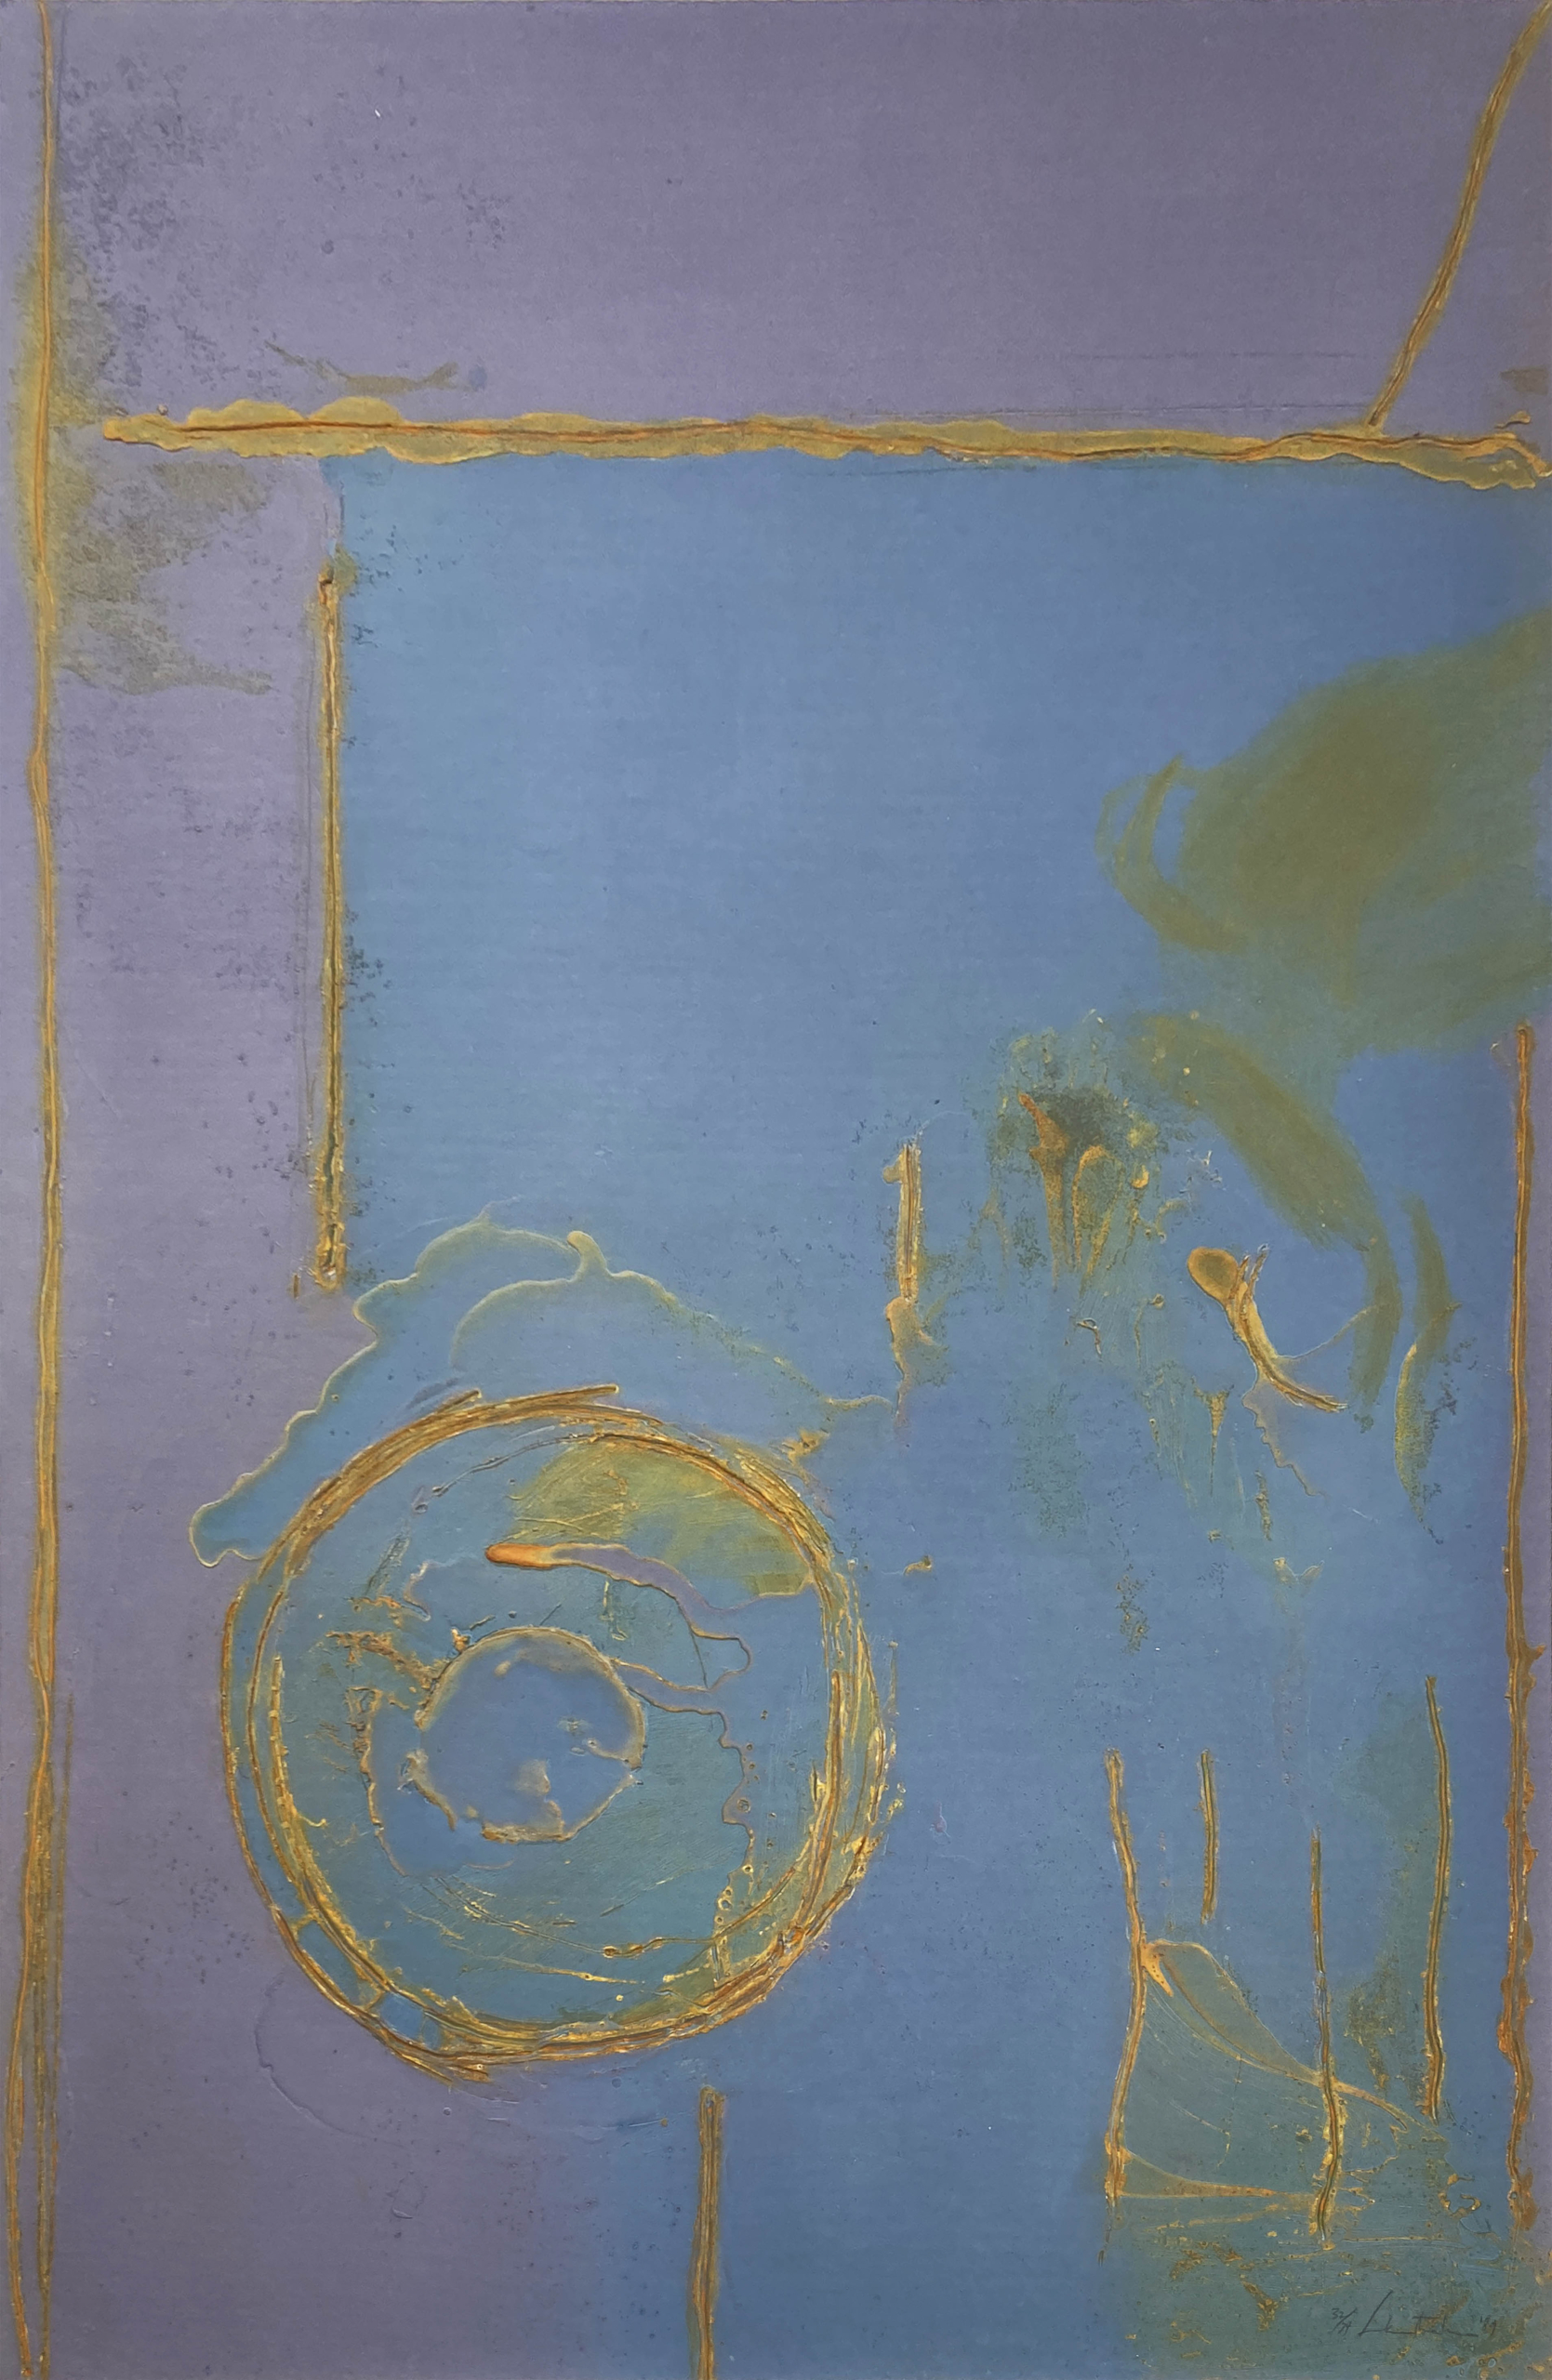 Helen Frankenthaler | Guadalupe | 1989